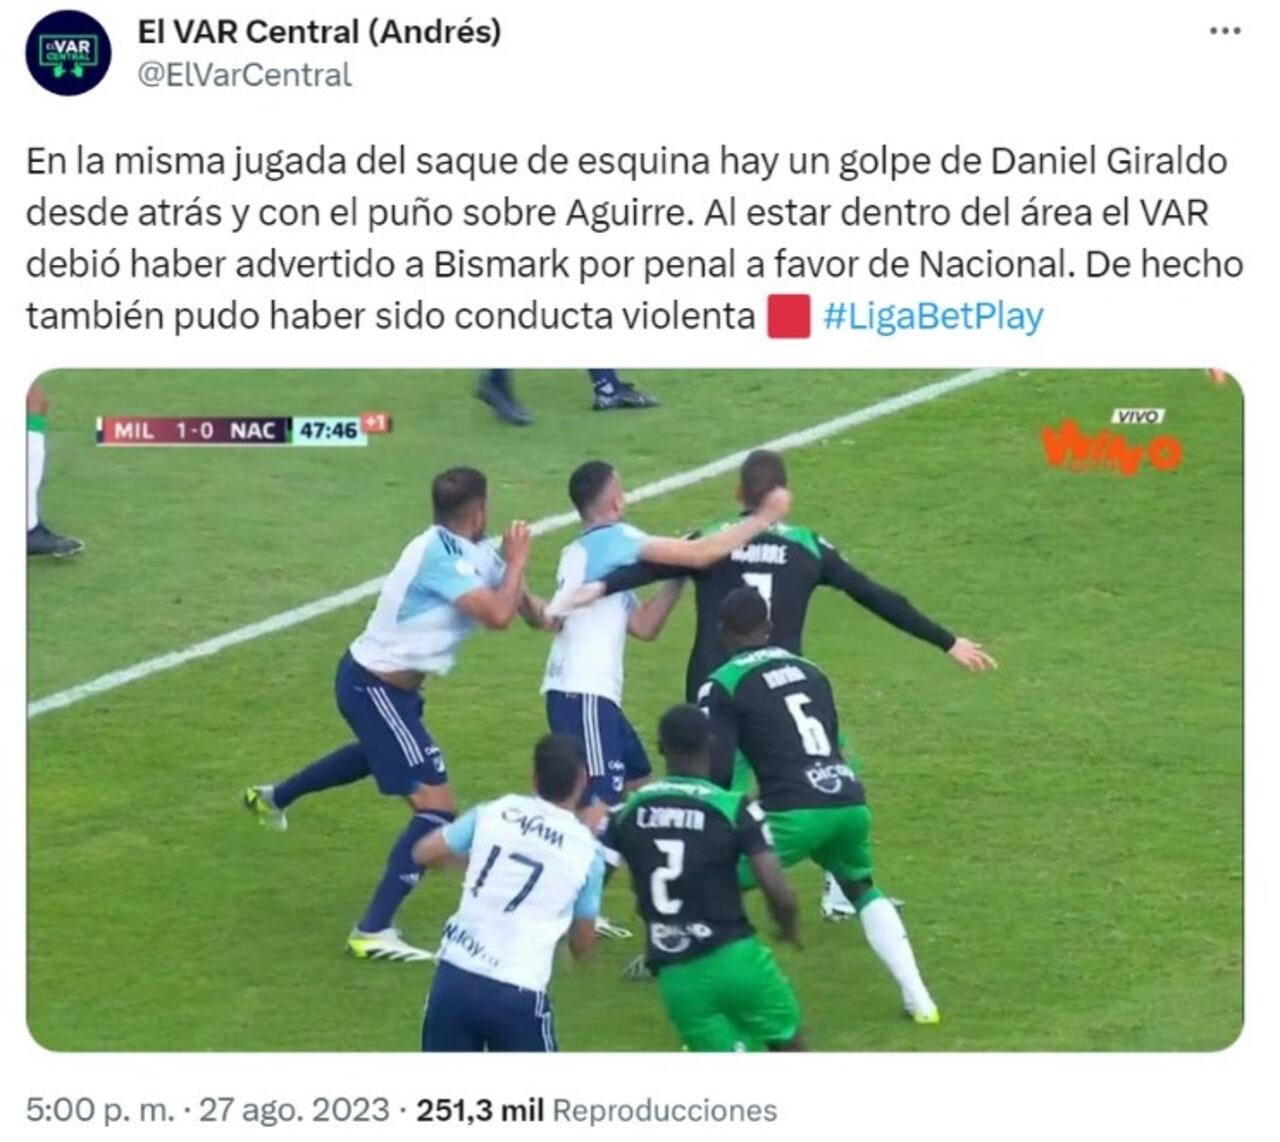 Captura de pantalla de la cuenta de Twitter de El VAR Central (Andrés) (@ElVarCentral) donde se explica la jugada y las posibles acciones que se pudieron tomar